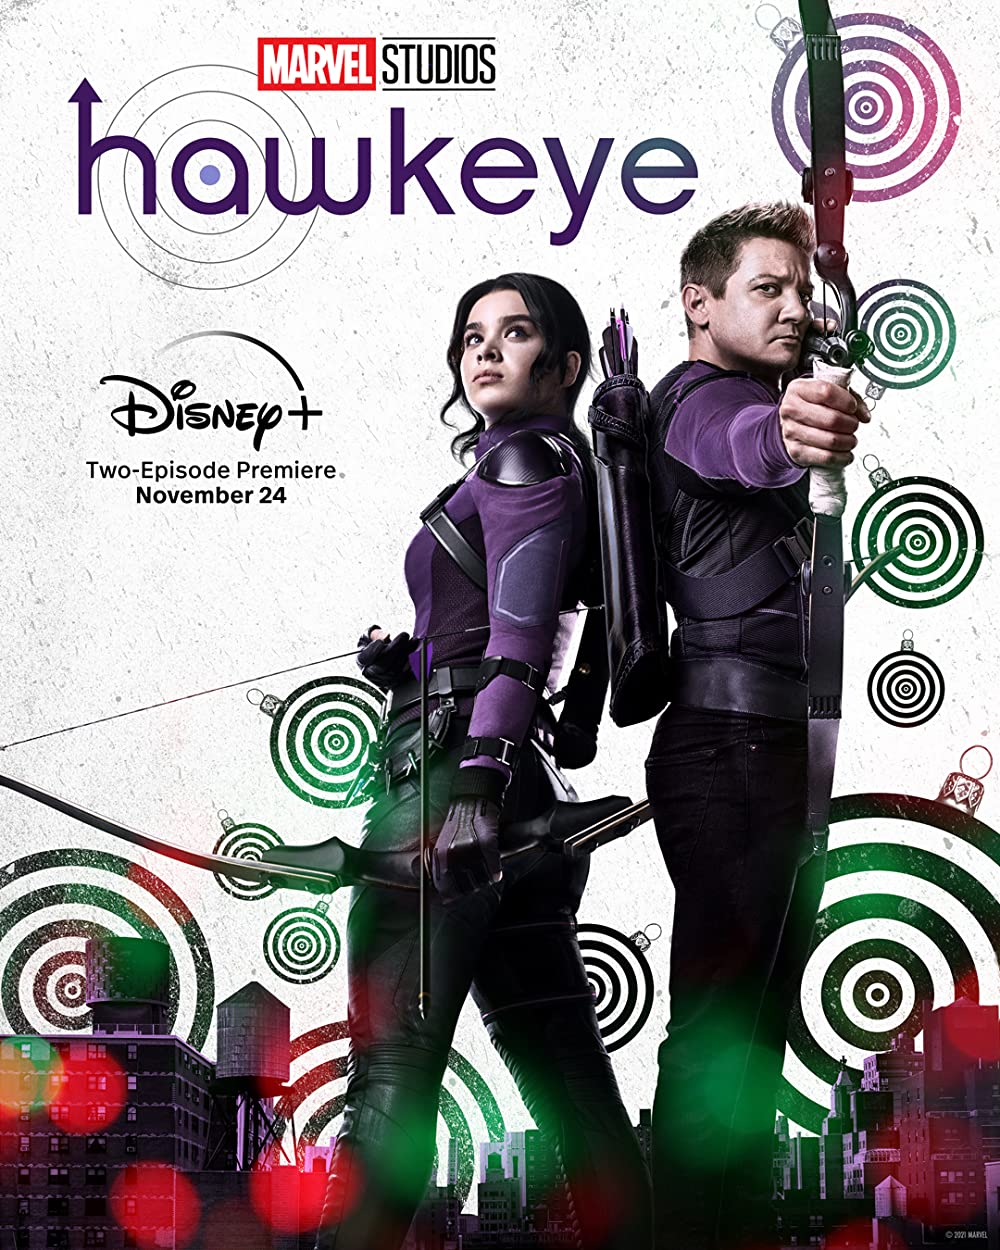 Hawkeye - Season 1